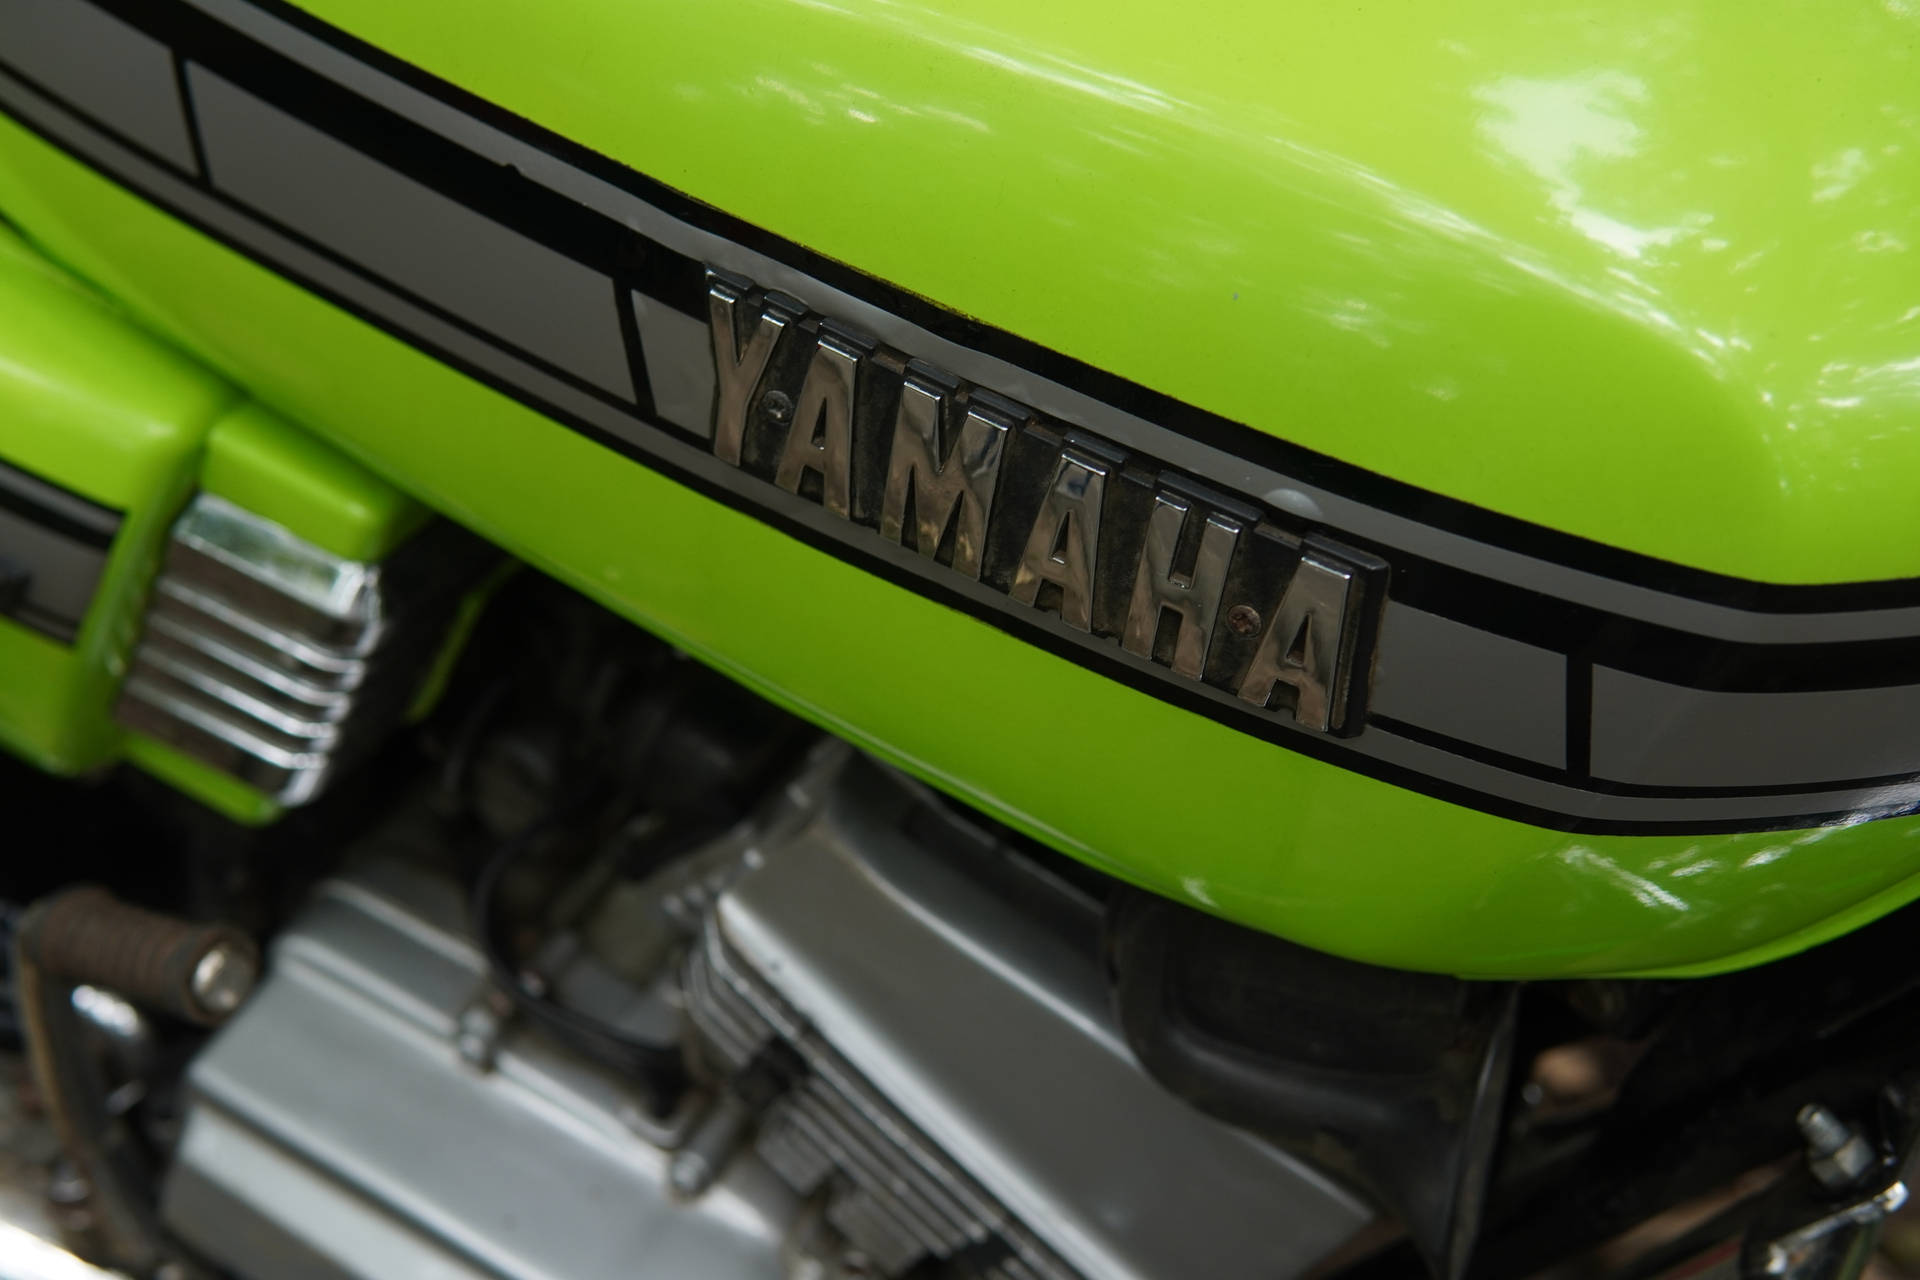 Neon Green Yamaha Rx100 Close-up Wallpaper